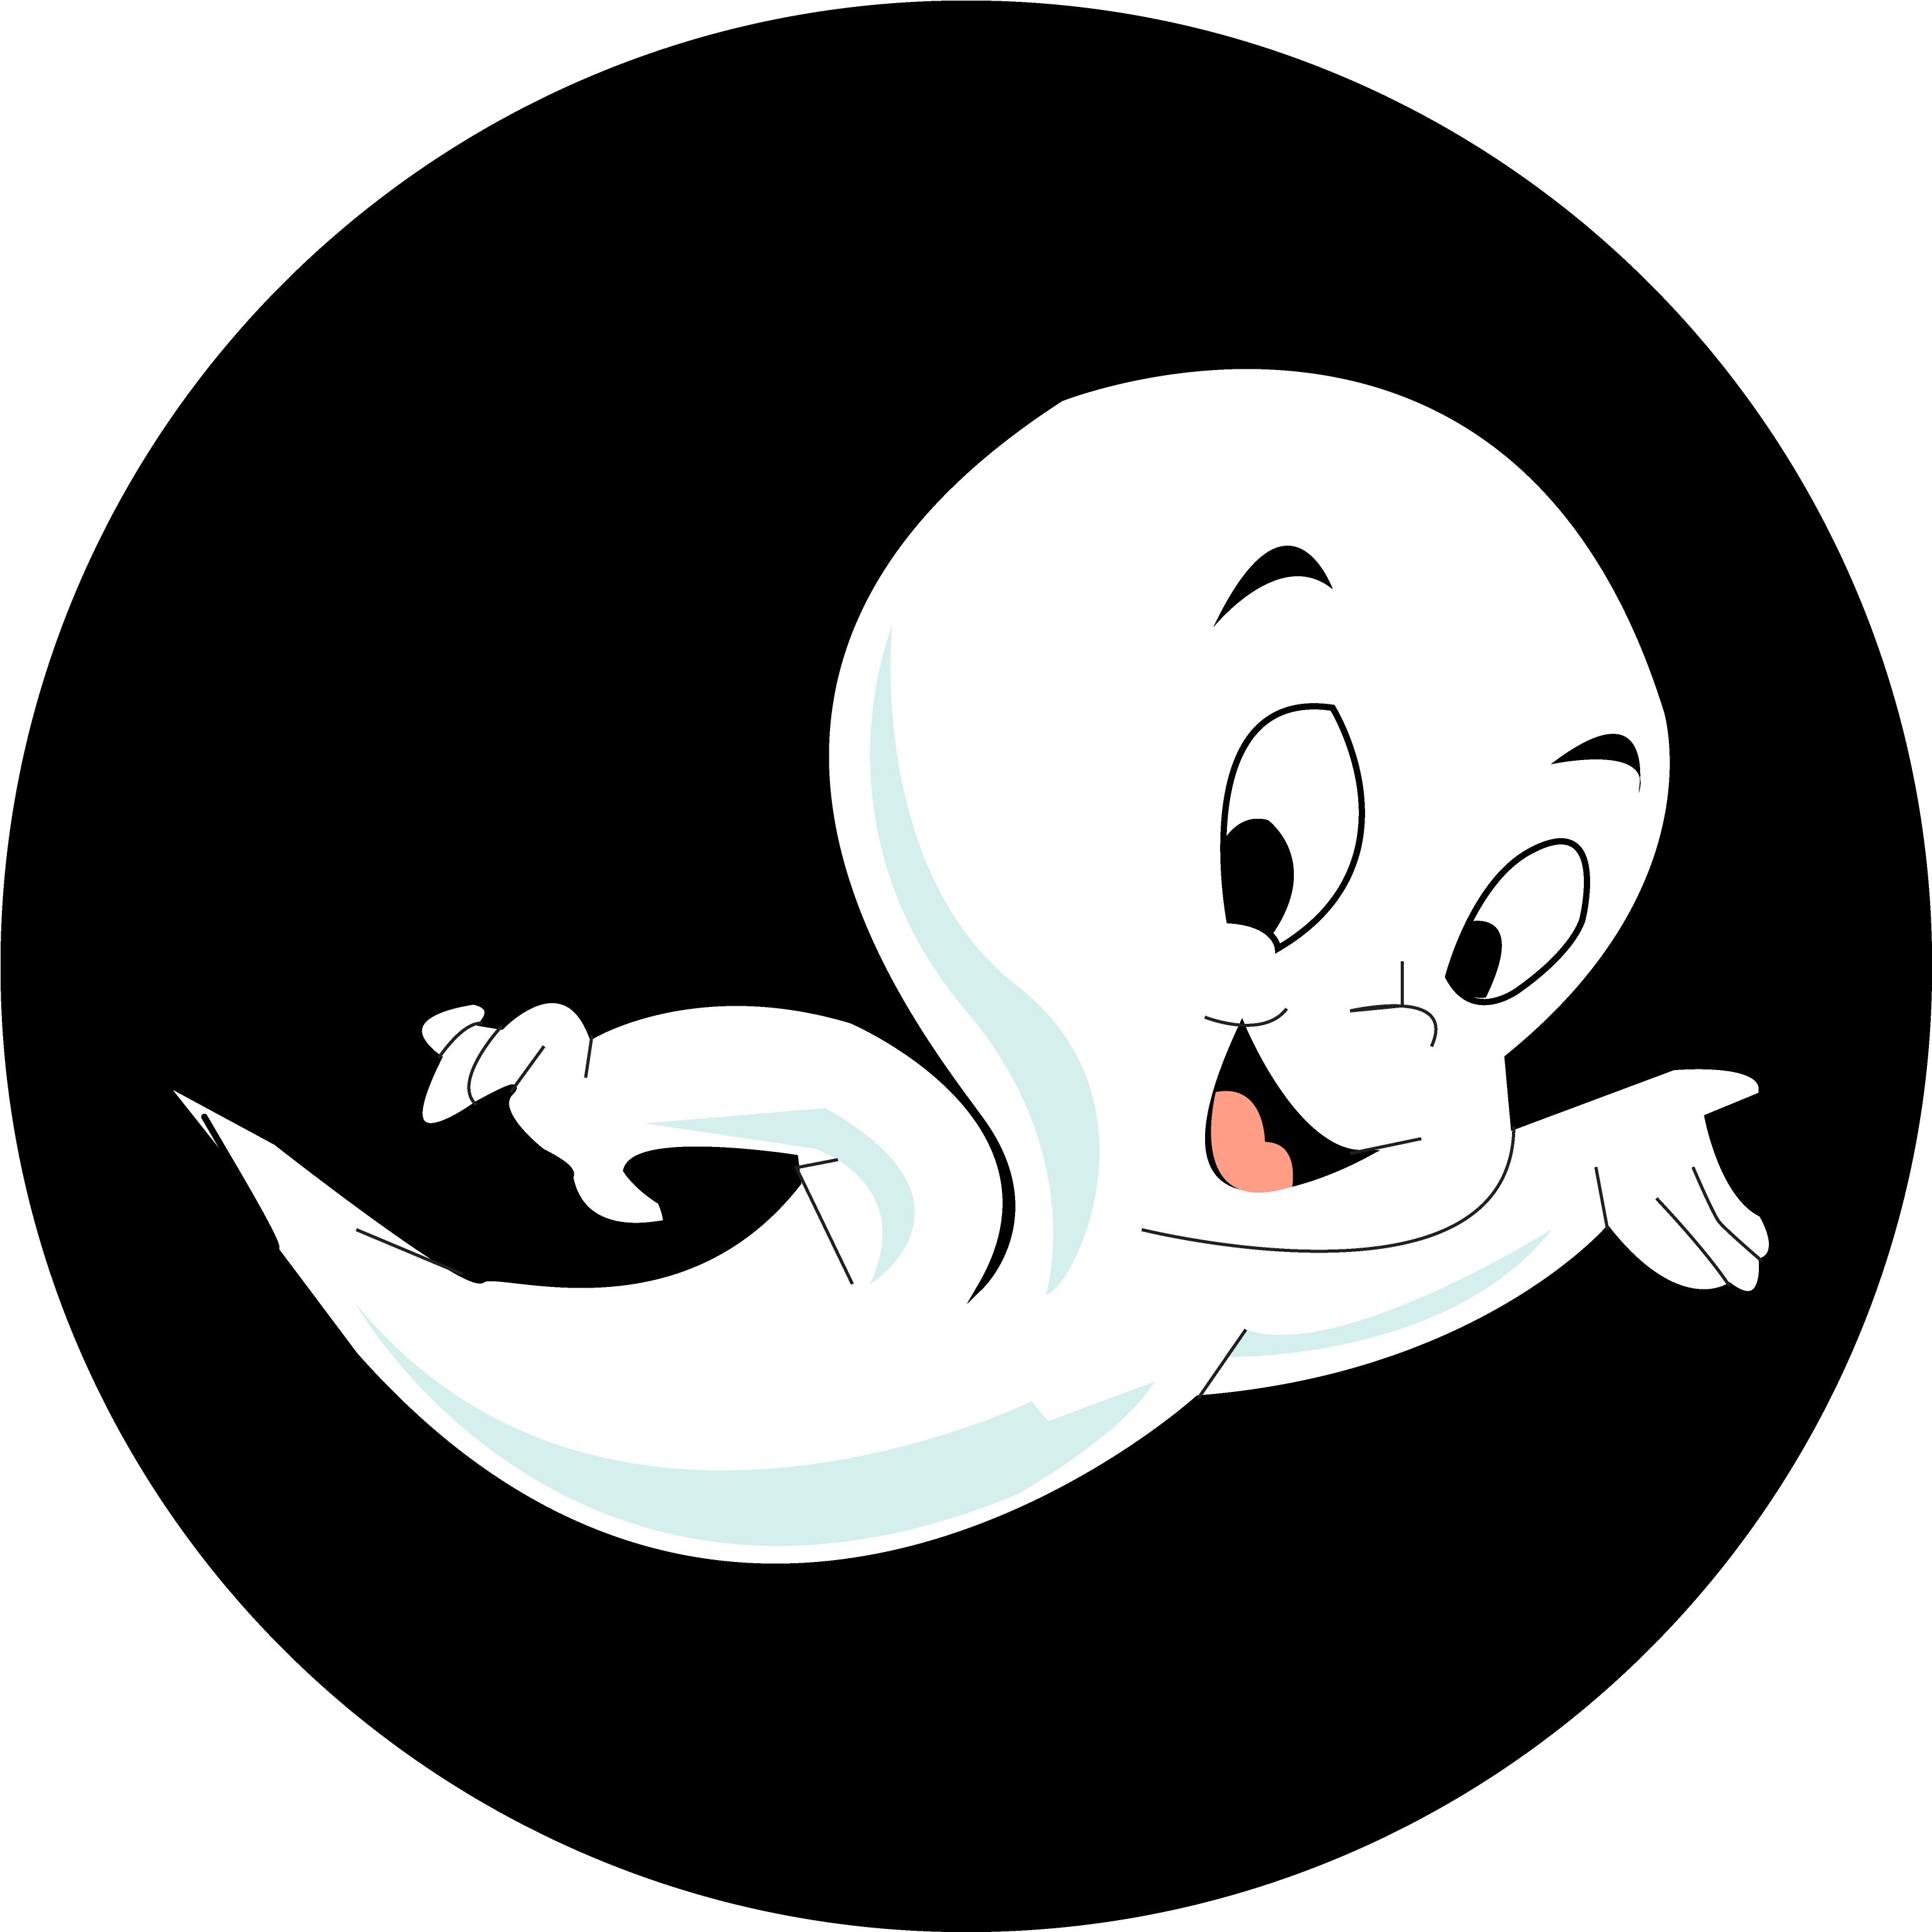 Casper Cute Ghost PNG